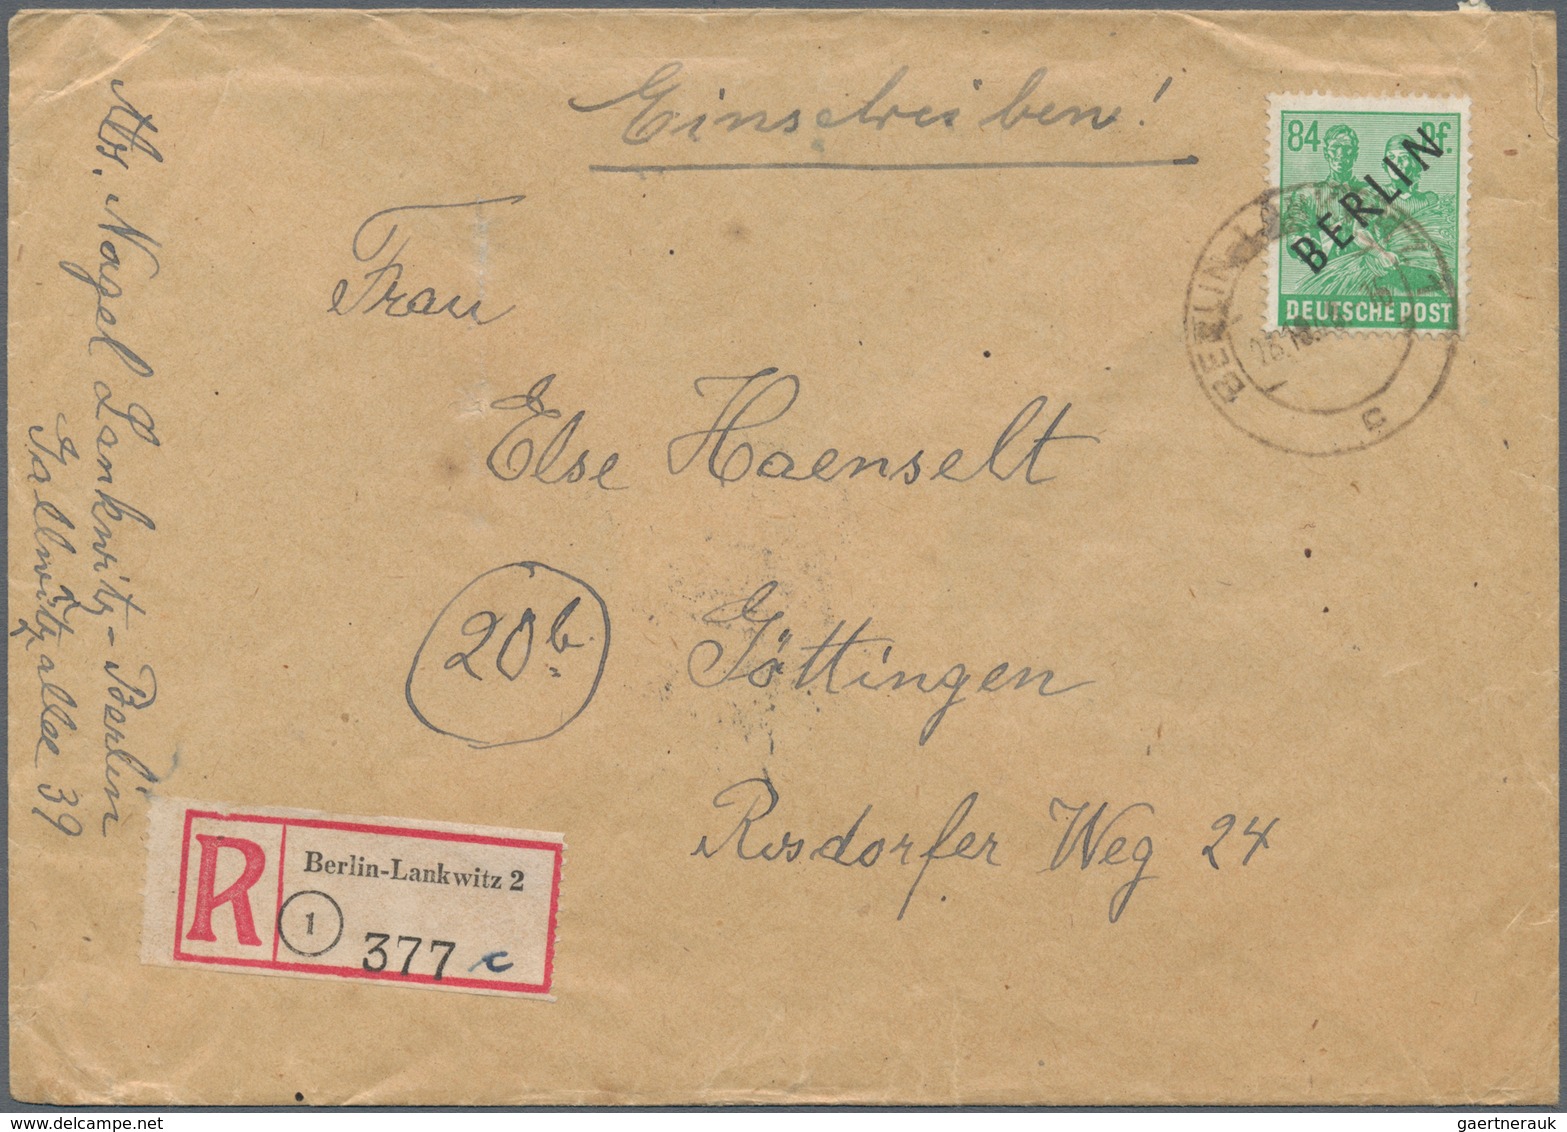 Deutsches Reich: 1863/1956, kleiner Brief u. Kartenposten mit meist deutschen Belegen im Briefalbum